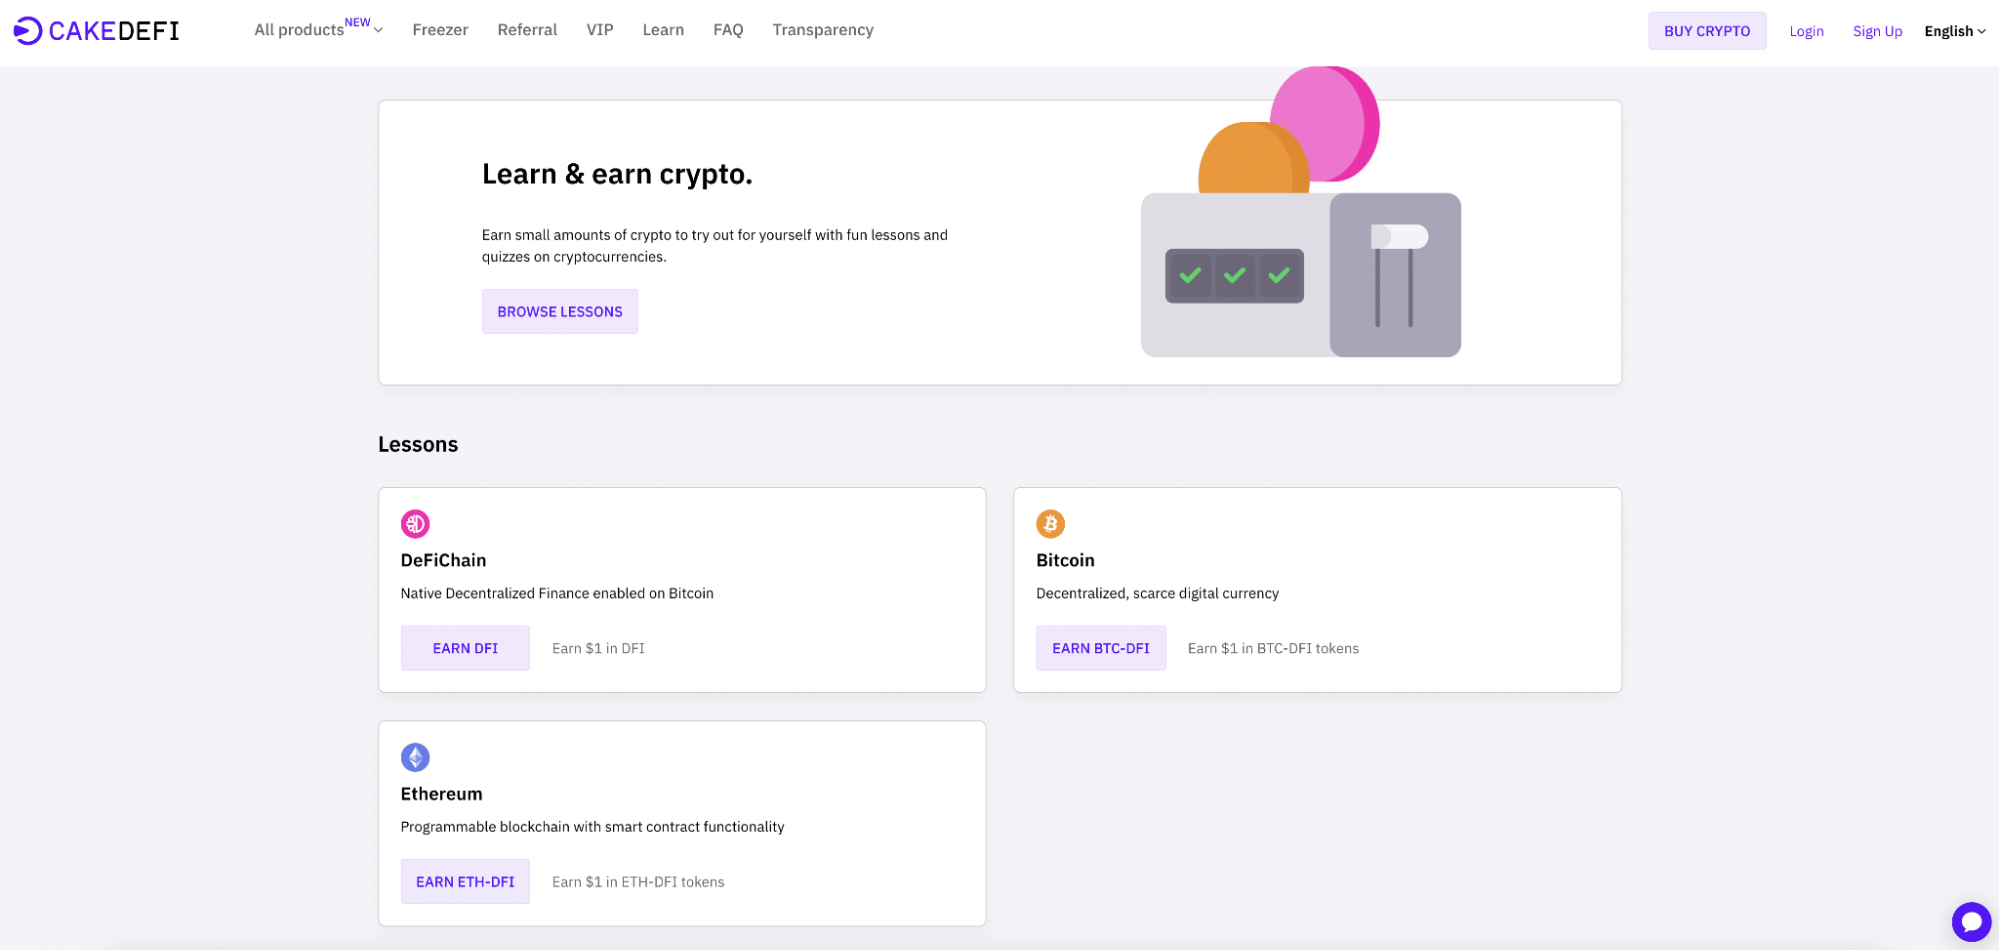 Dashabord showing Cake DeFi's crypto learning platform